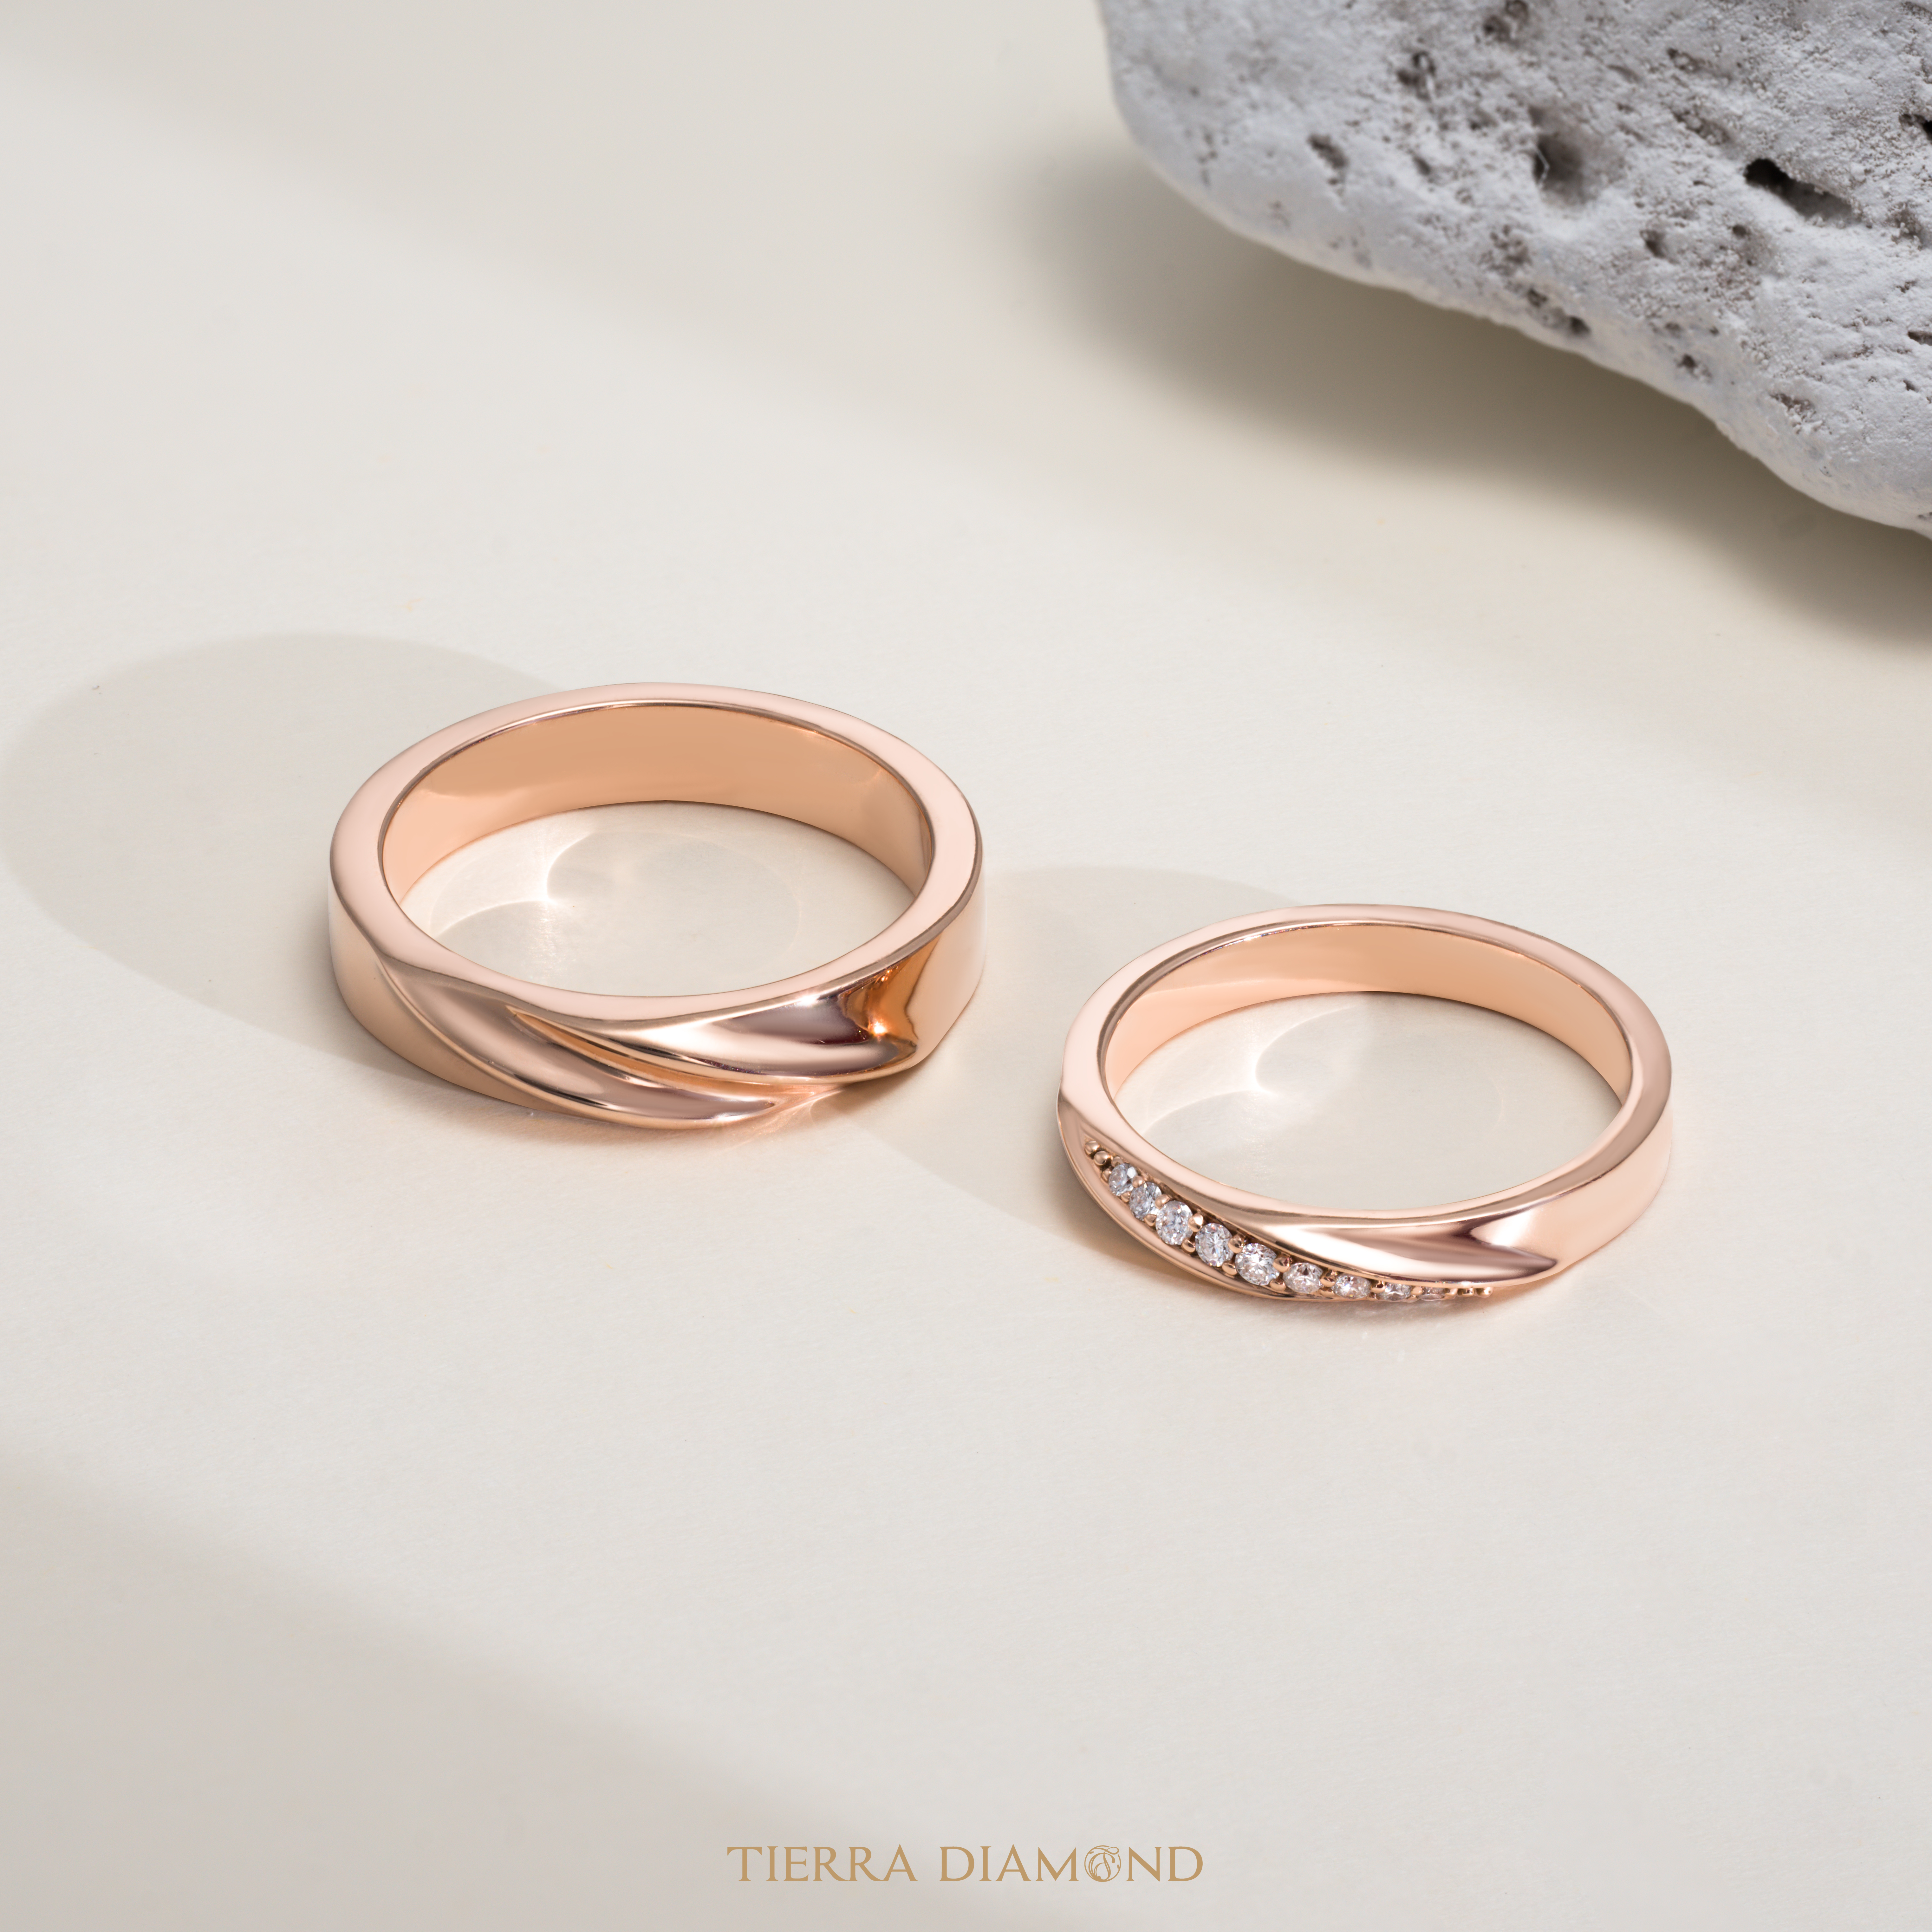 Những mẫu nhẫn cưới kim cương đẹp nhất - Giá chỉ từ 15 triệu đồng - 4.jpg